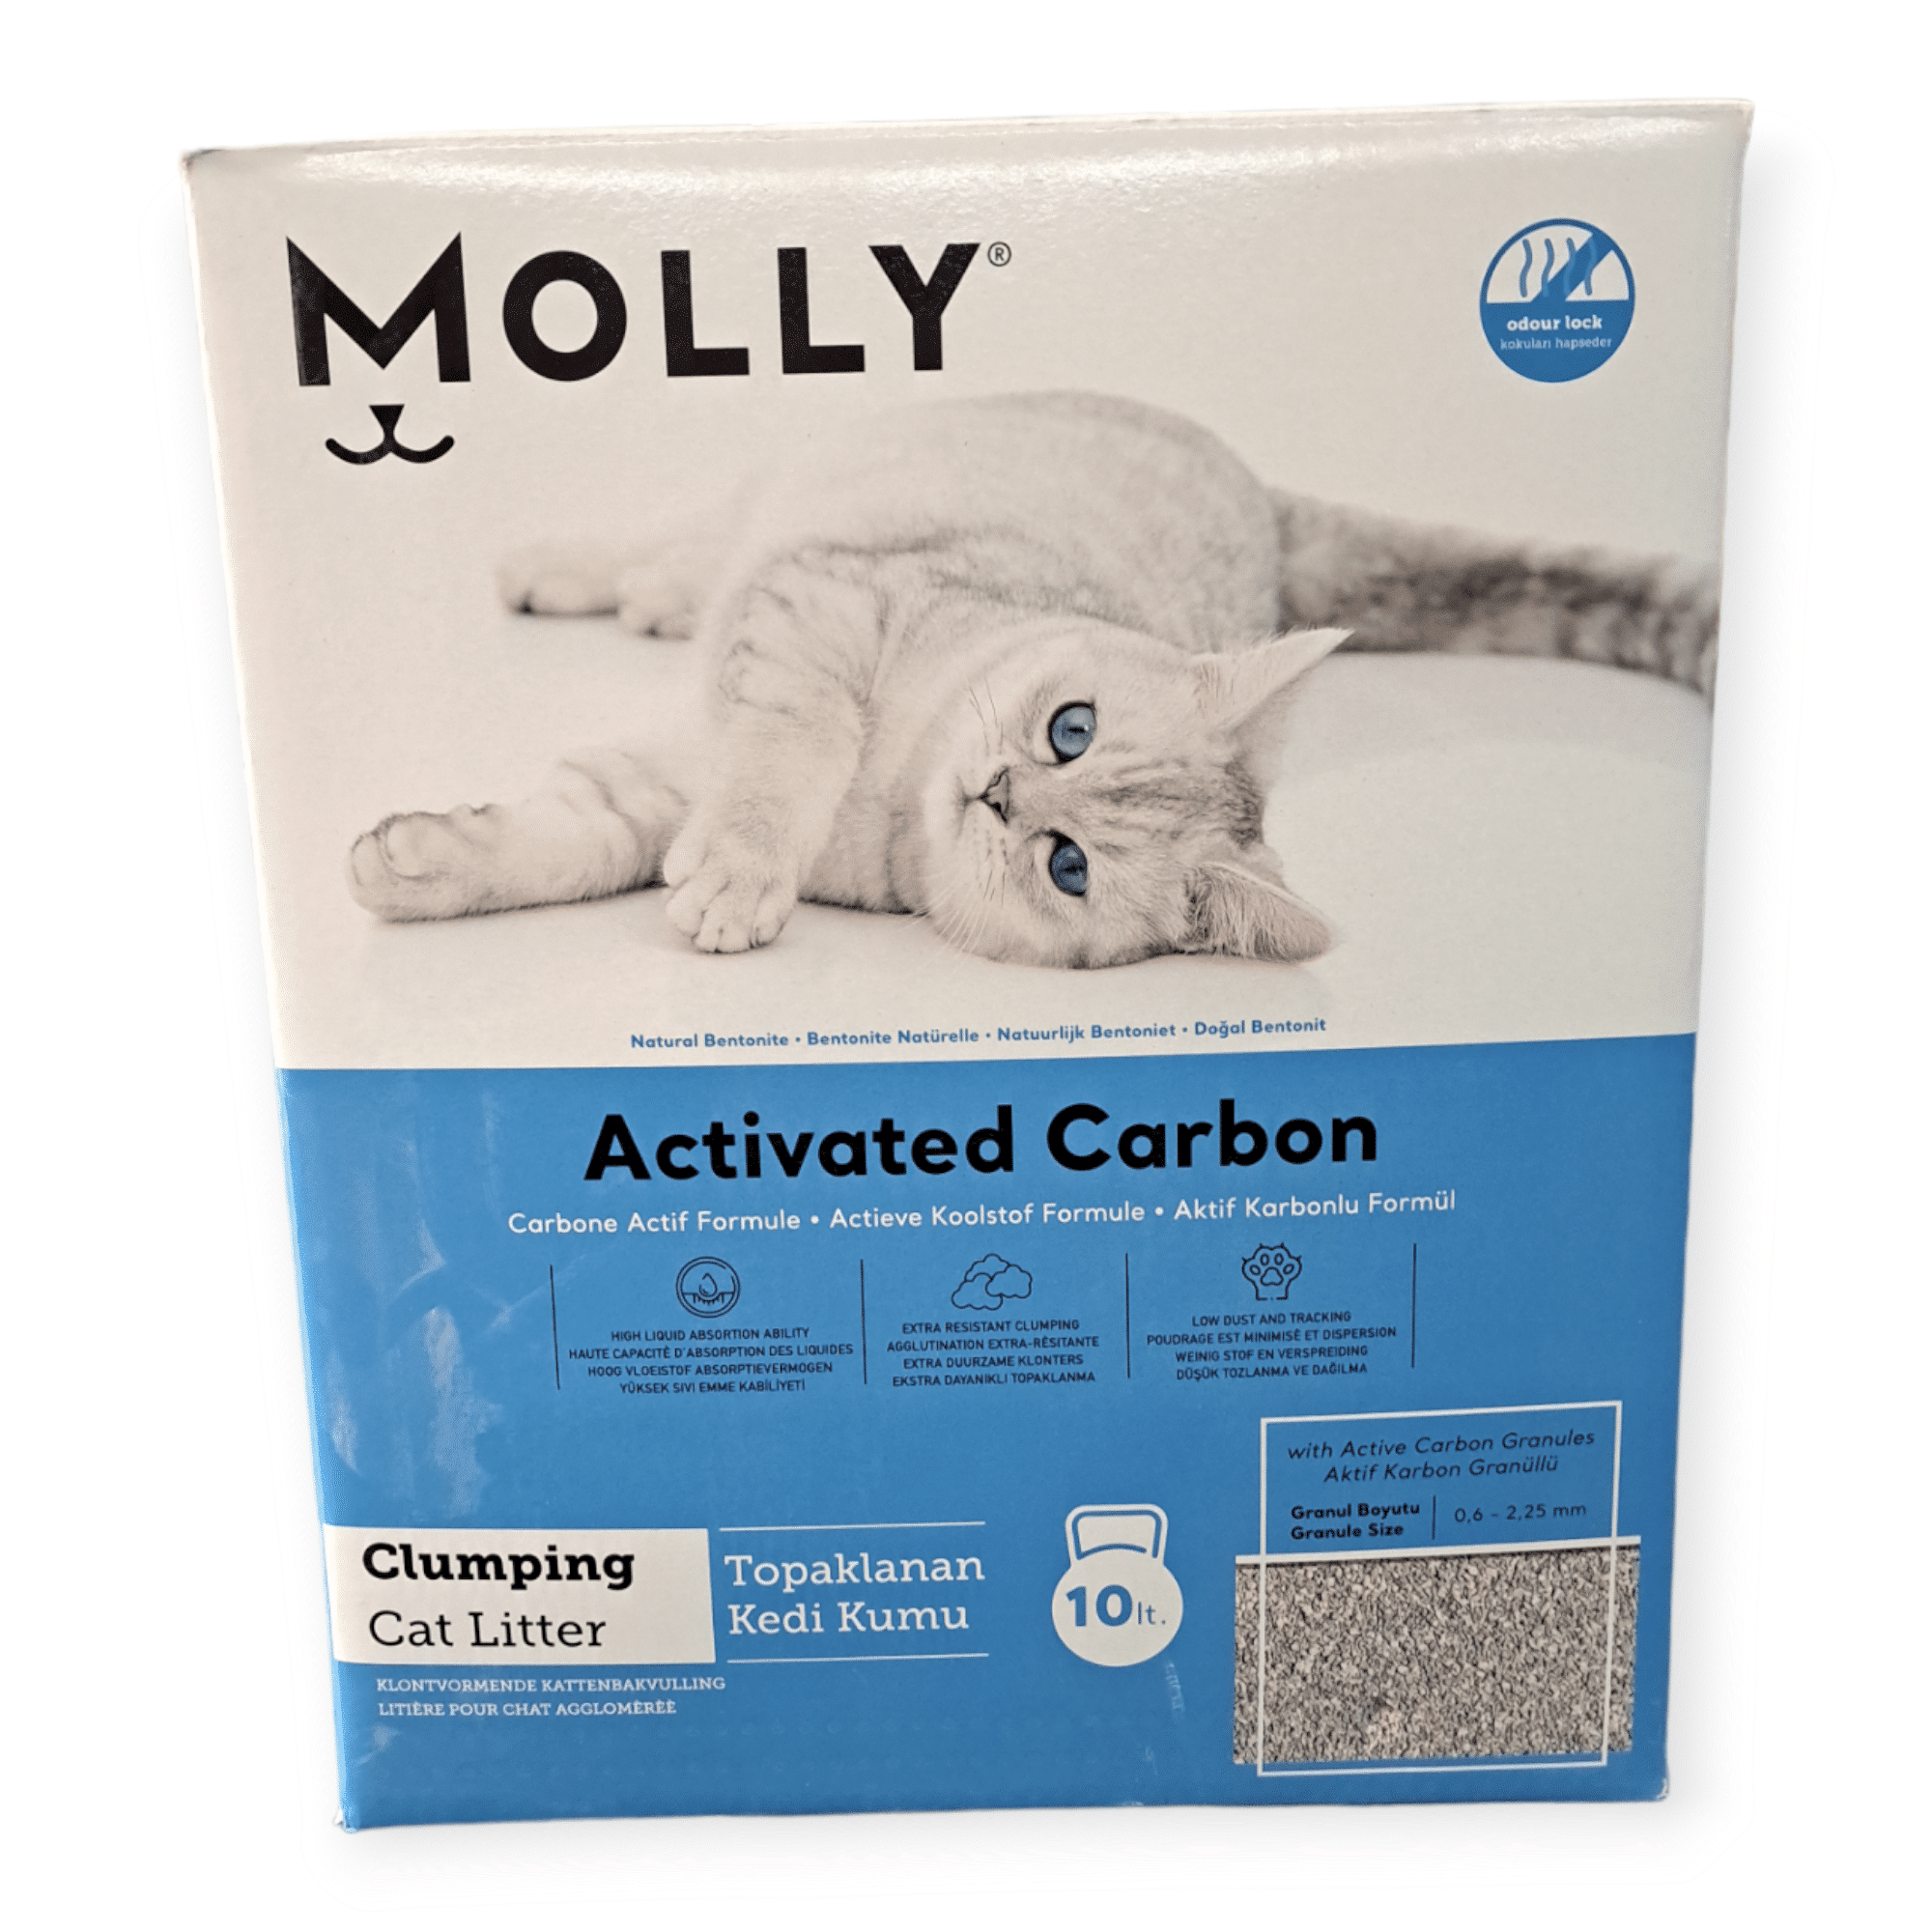 פחם מולי לחתולים באריזת קרטון, 10 ק”ג, בצבע תכלת